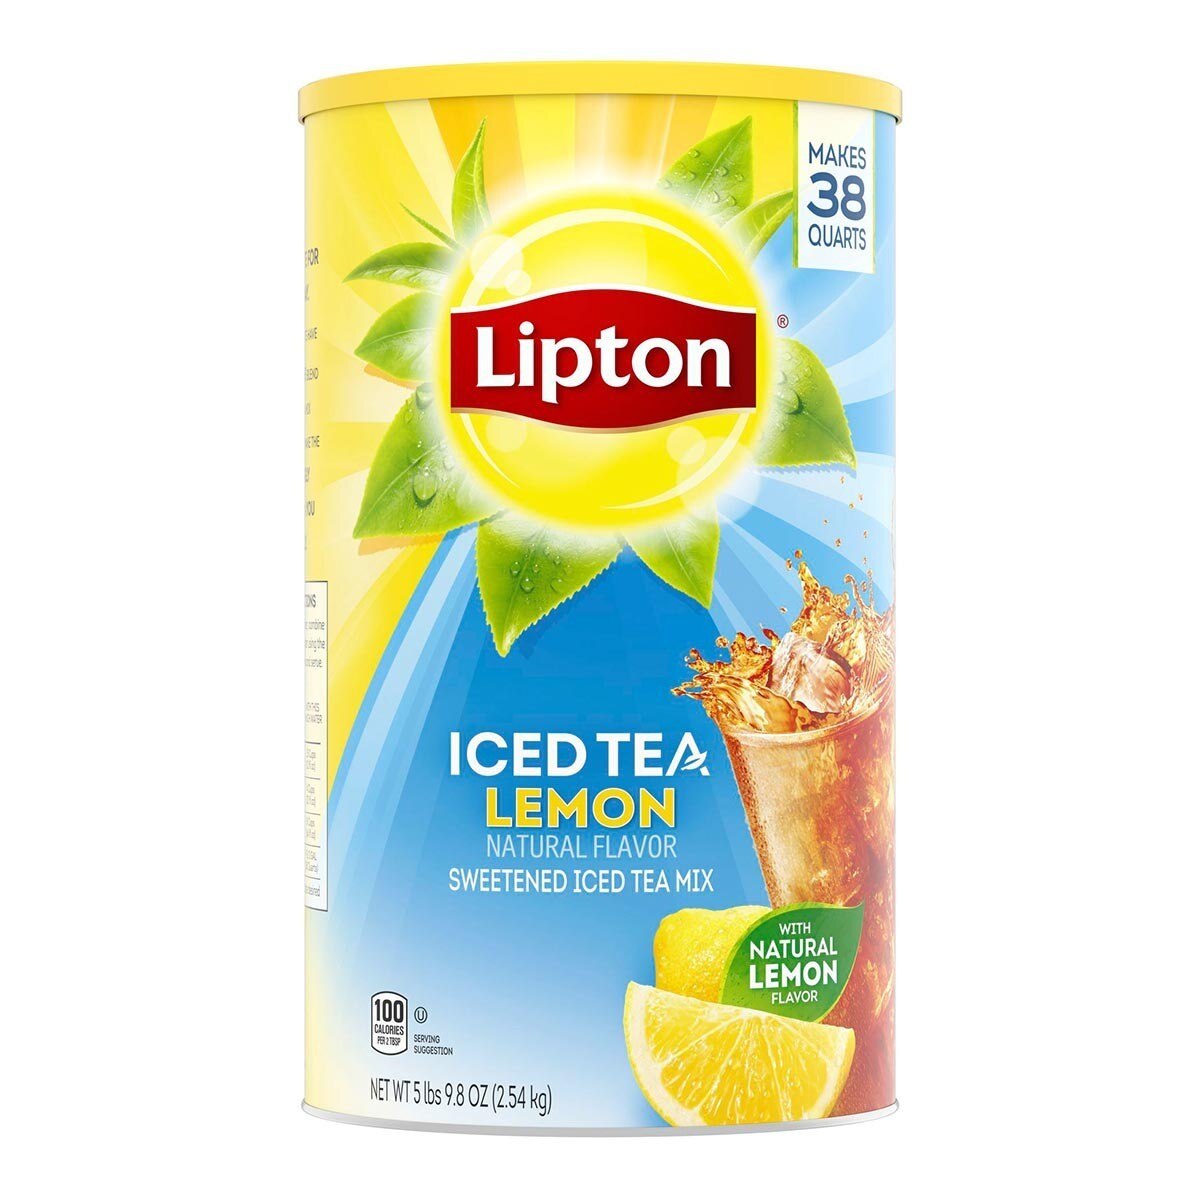 立頓 冰檸檬風味紅茶粉 2.54公斤